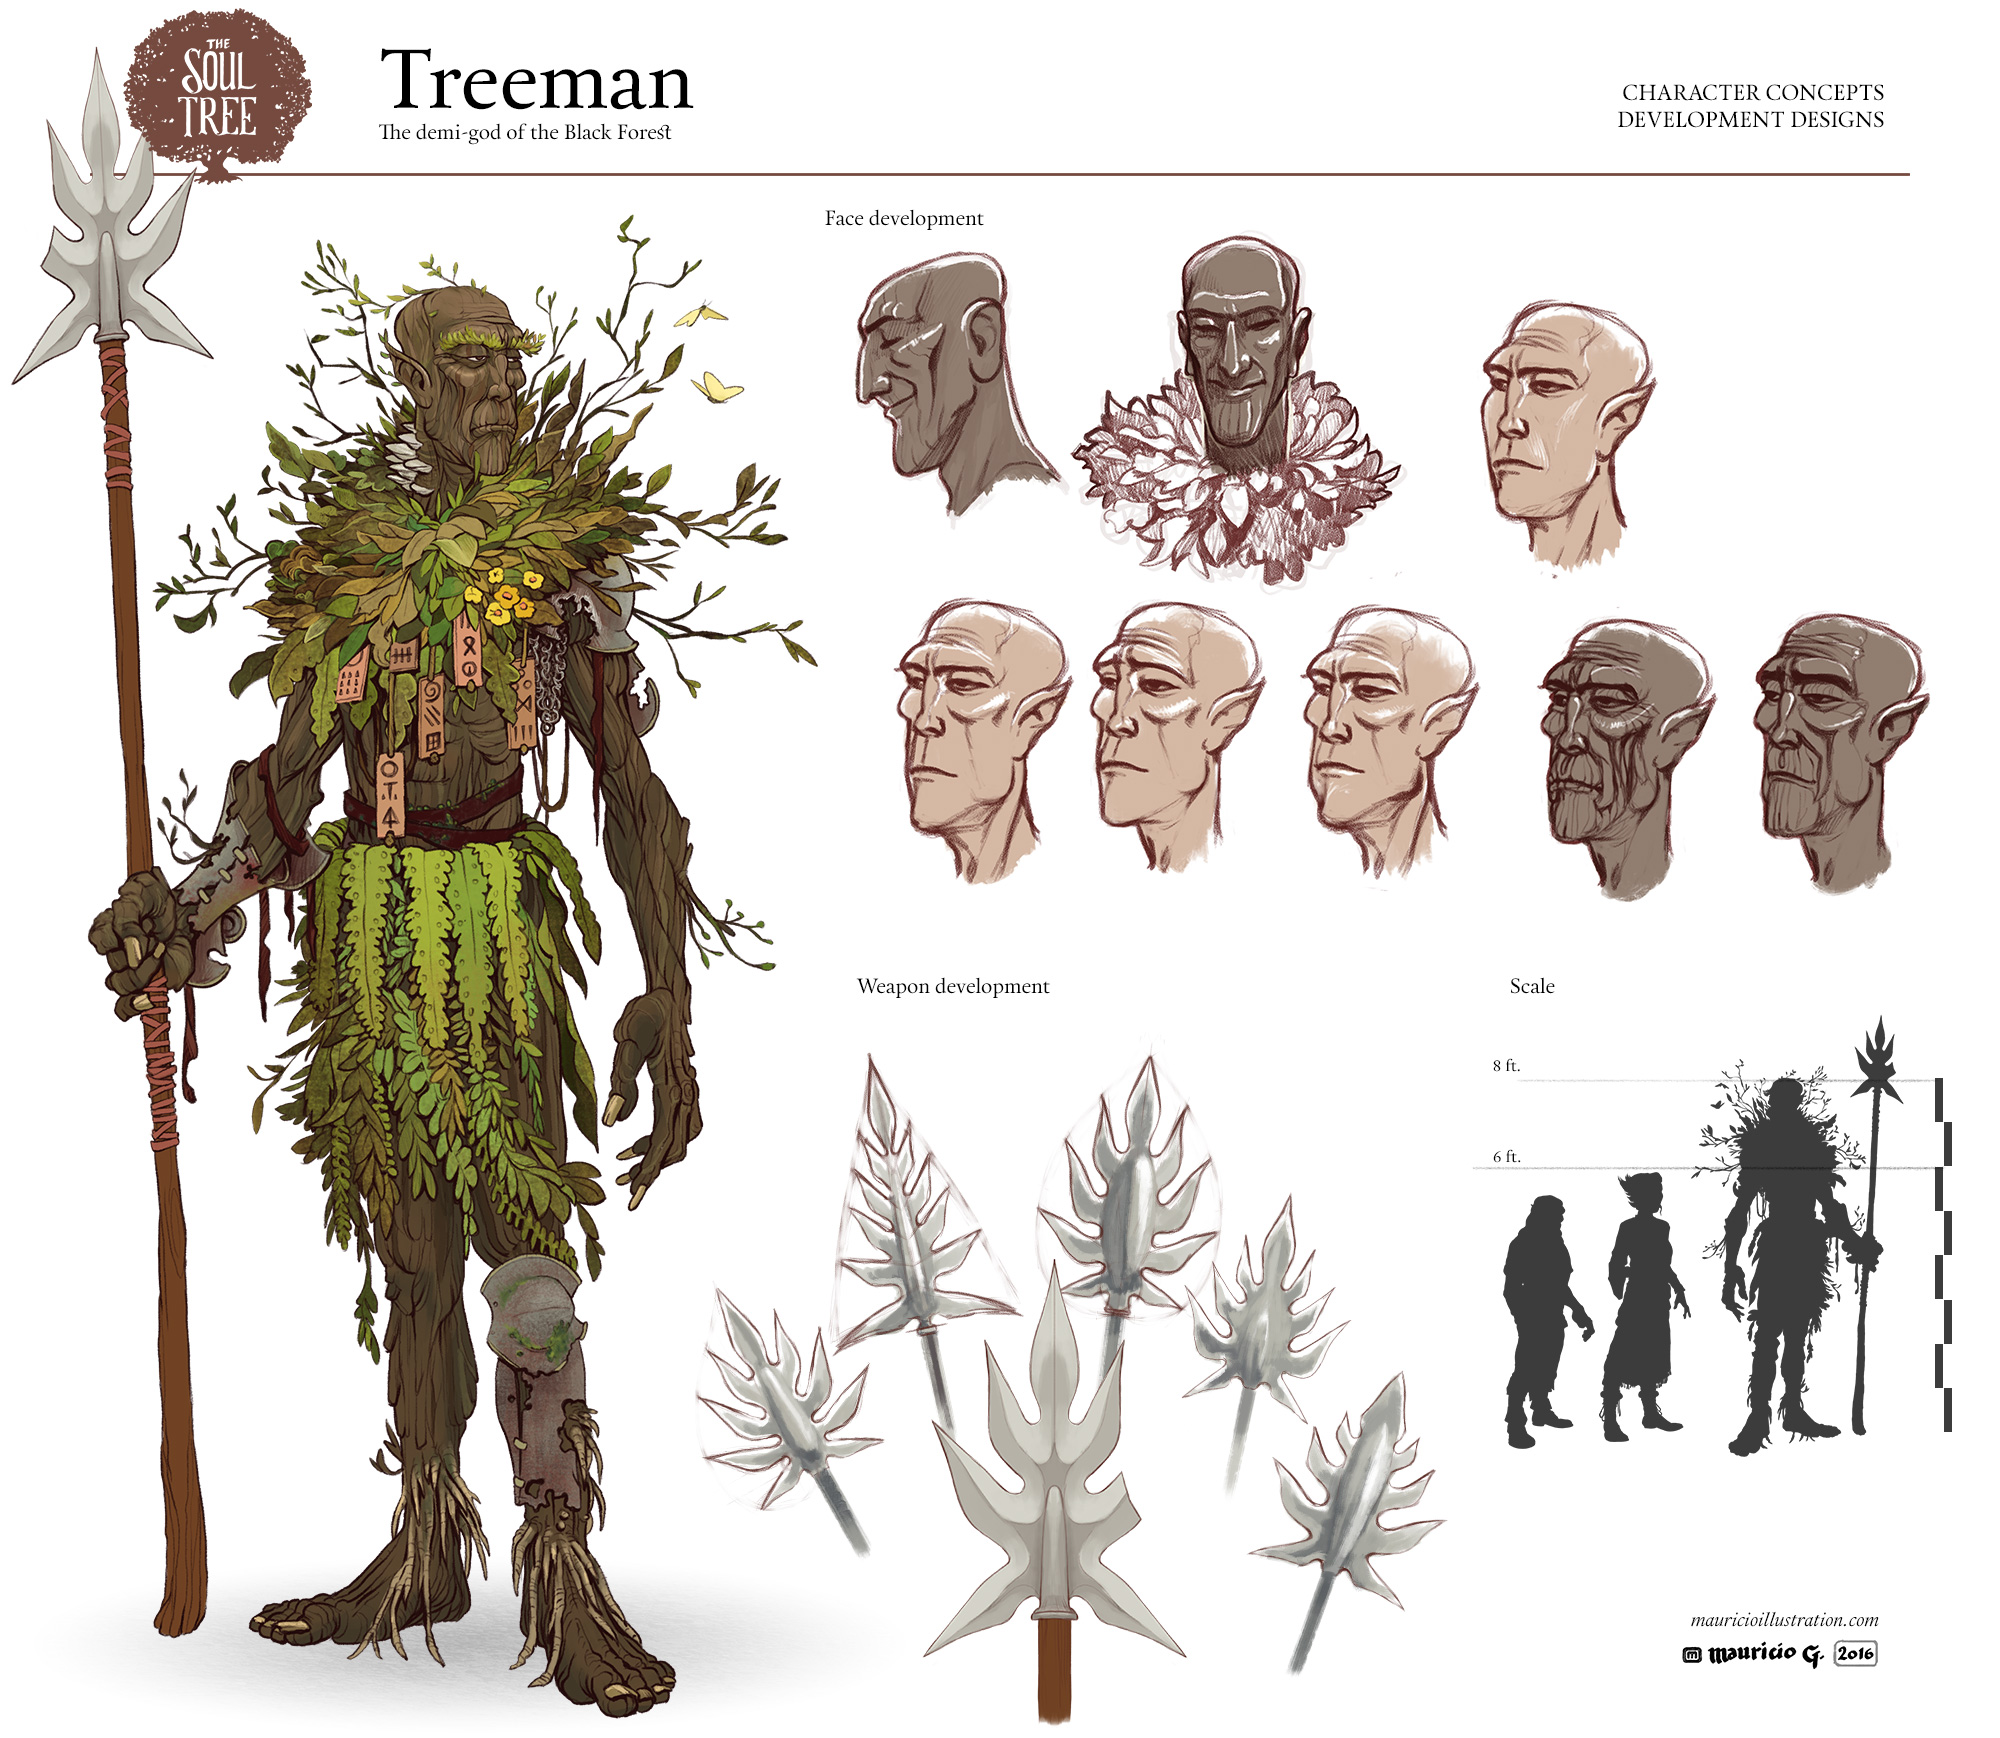 he Soul Tree - Treeman